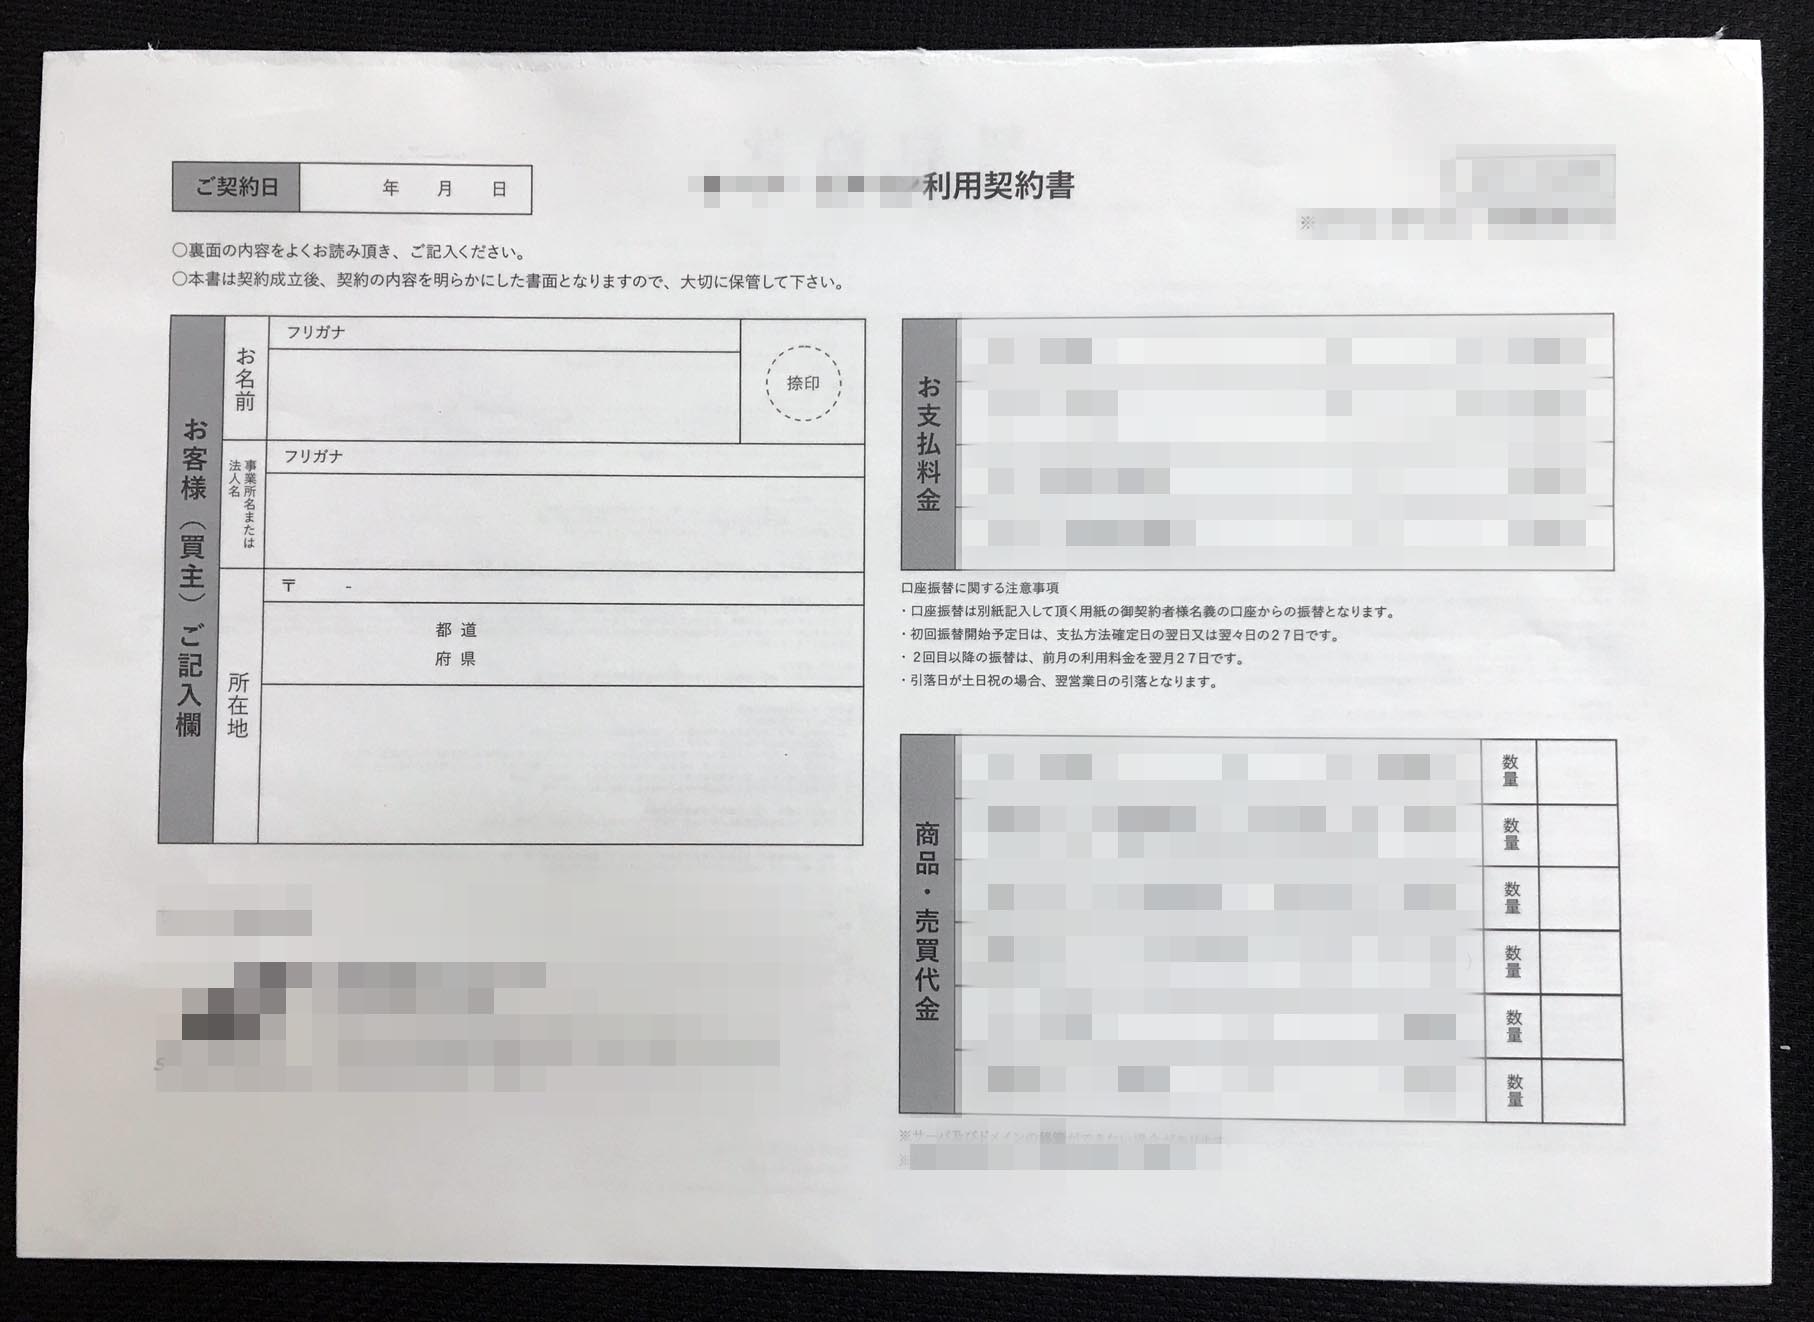 愛知県　デザイン業　利用契約書　(２枚複写)